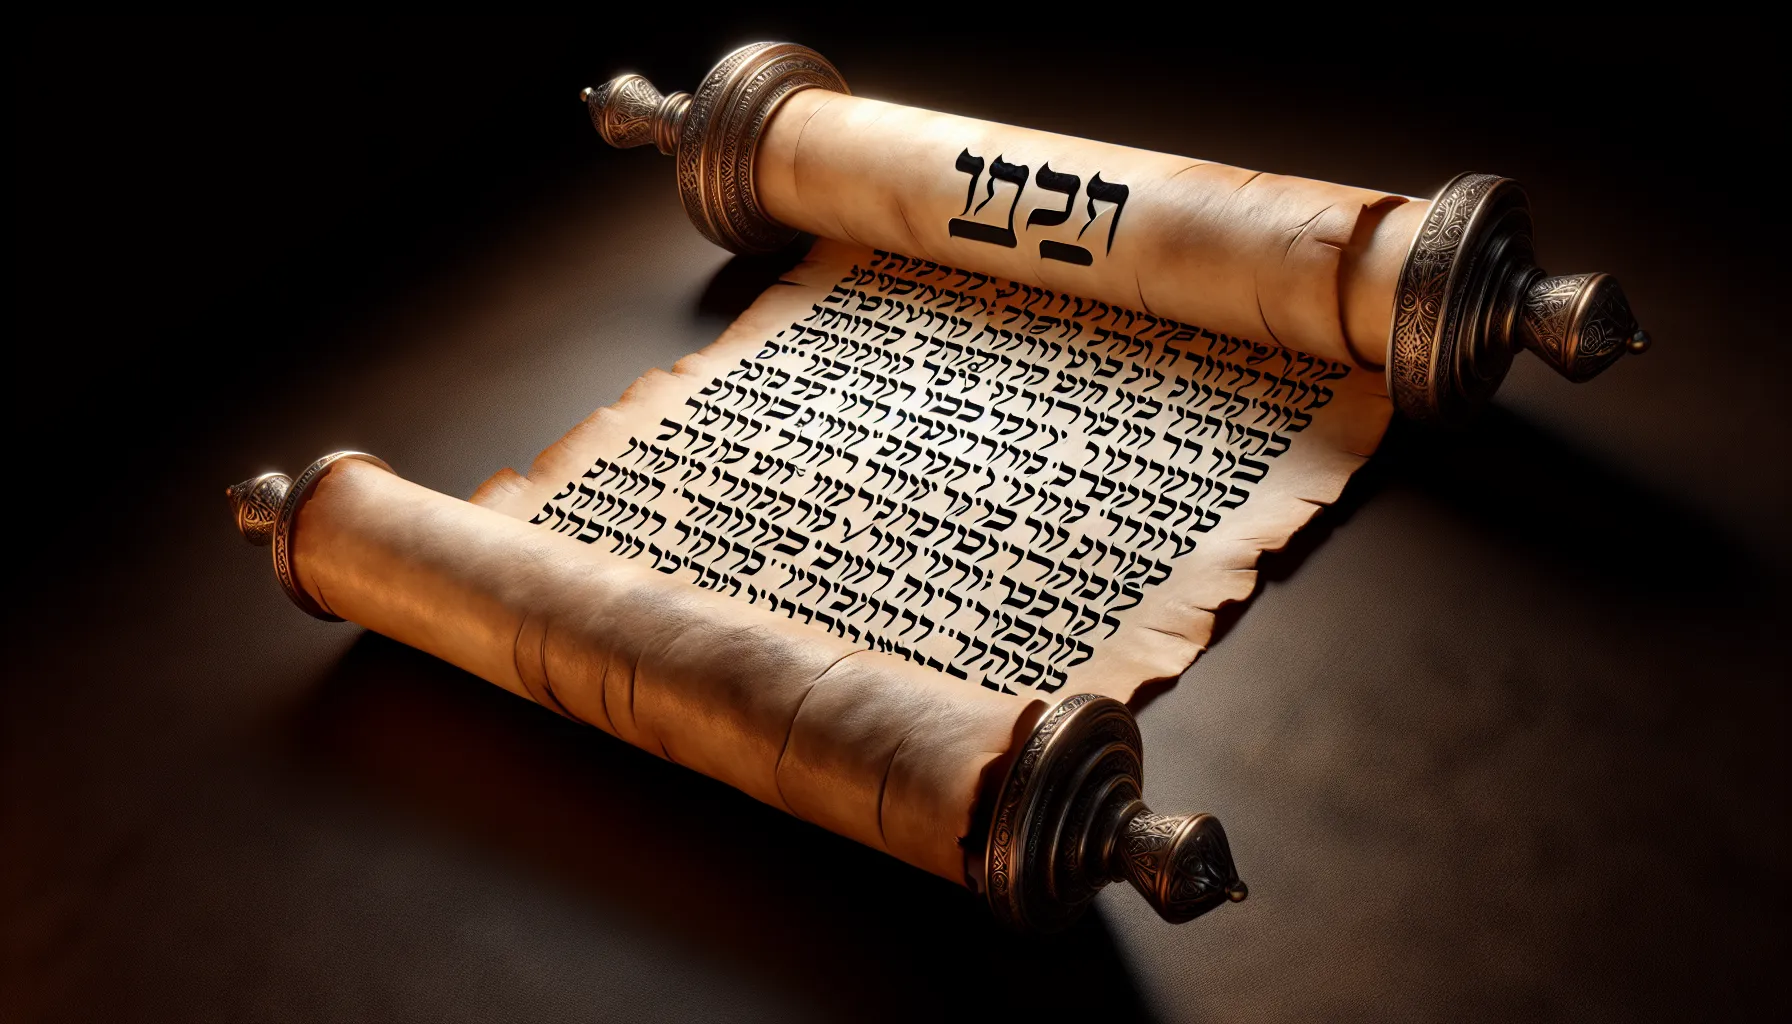 Imagen de un pergamino antiguo con inscripciones hebreas que representan la salvación de Israel en los últimos tiempos.